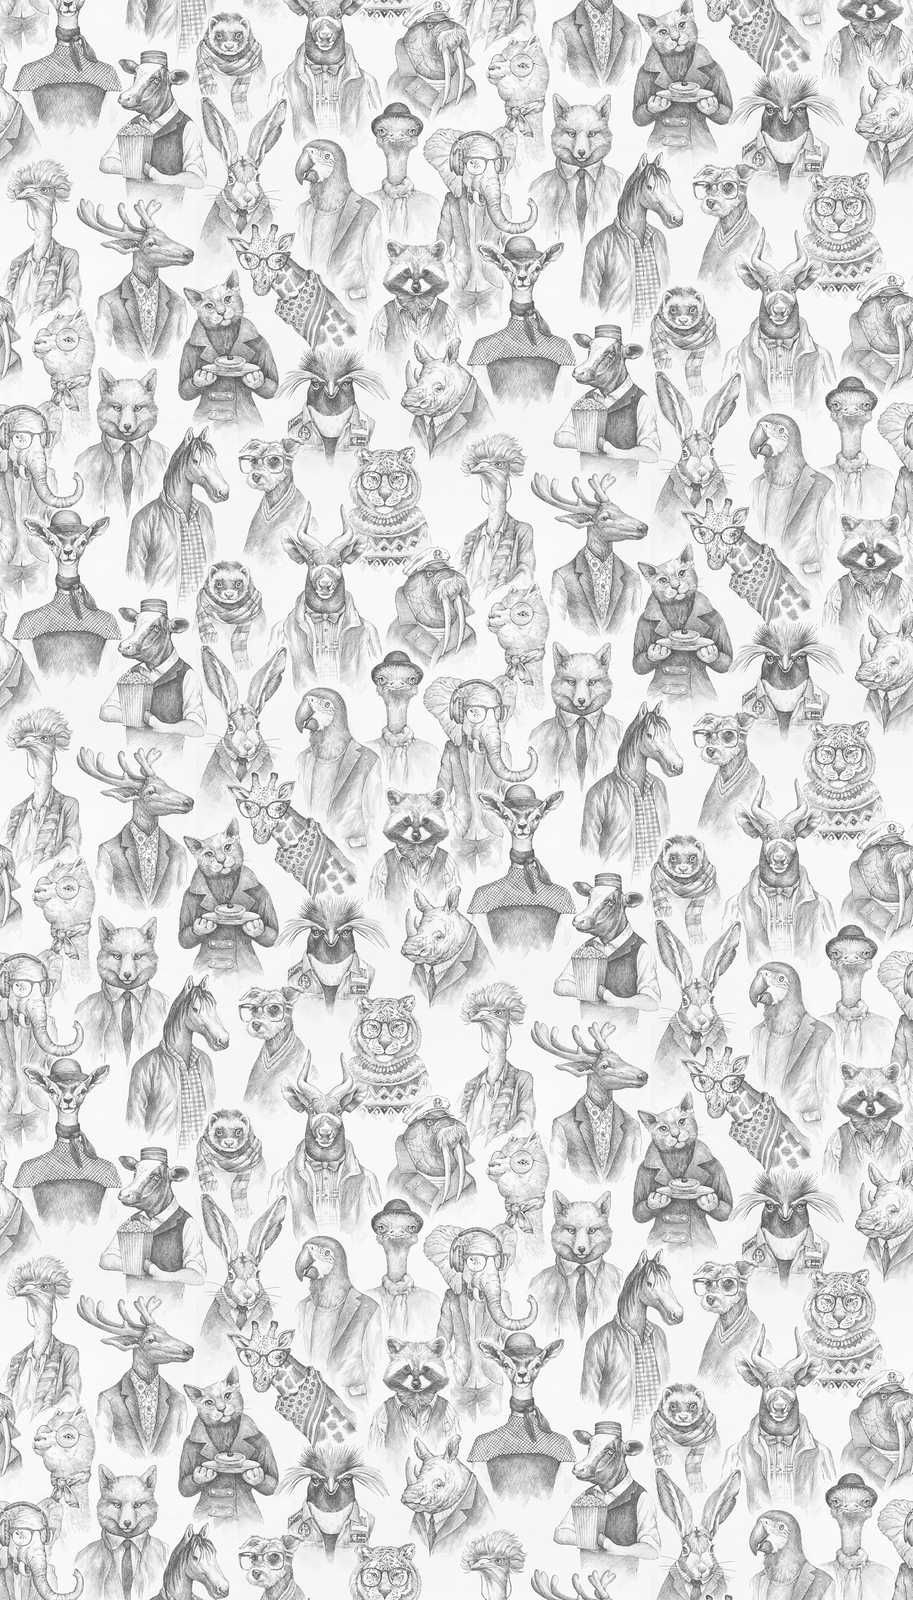             Papel pintado no tejido fabulous animal world de New-Walls - blanco y negro
        